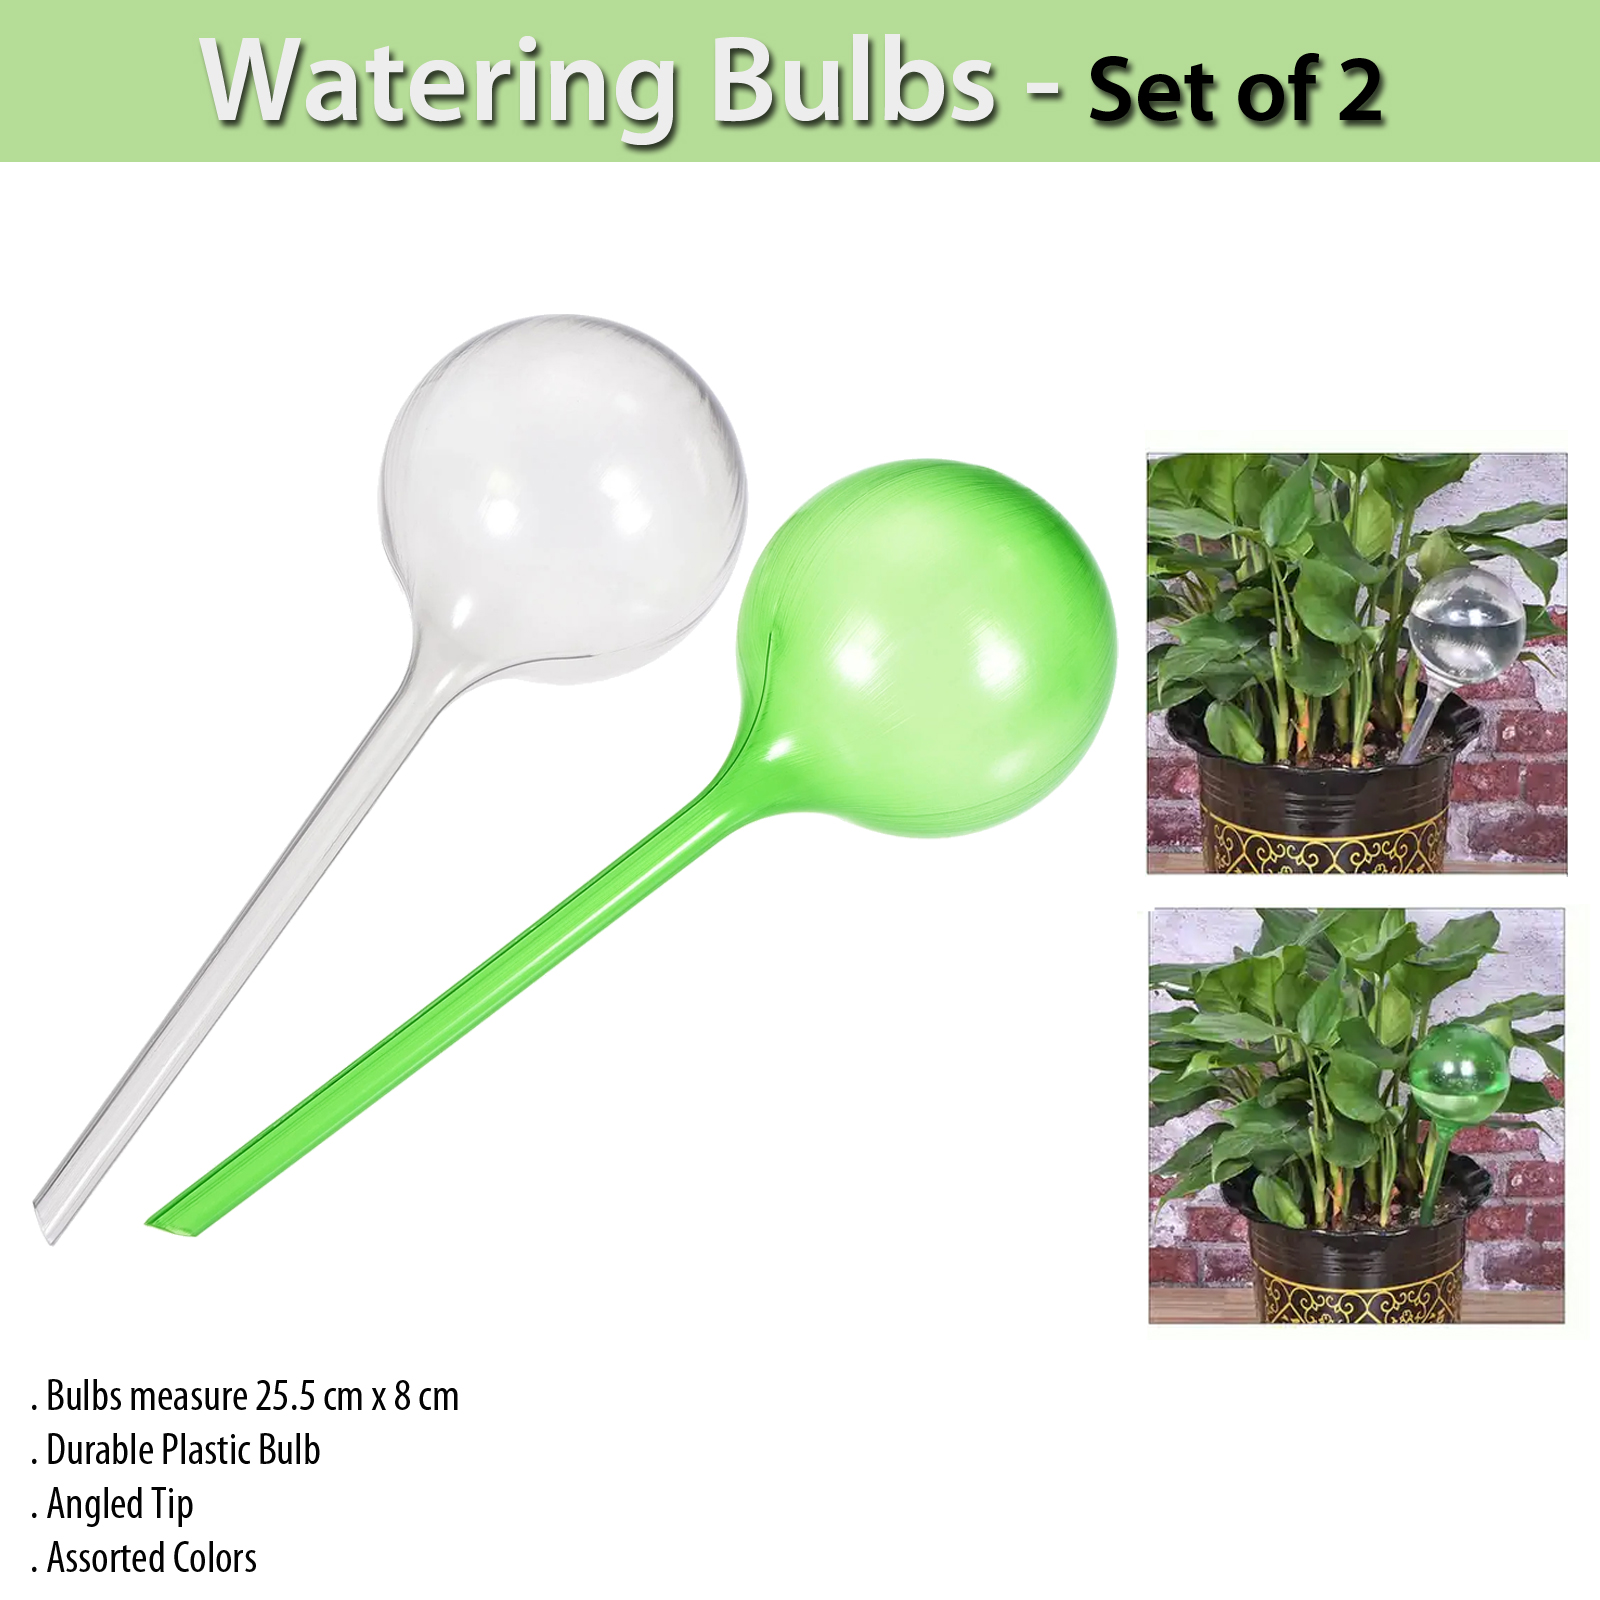 Watering Bulbs - Set of 2